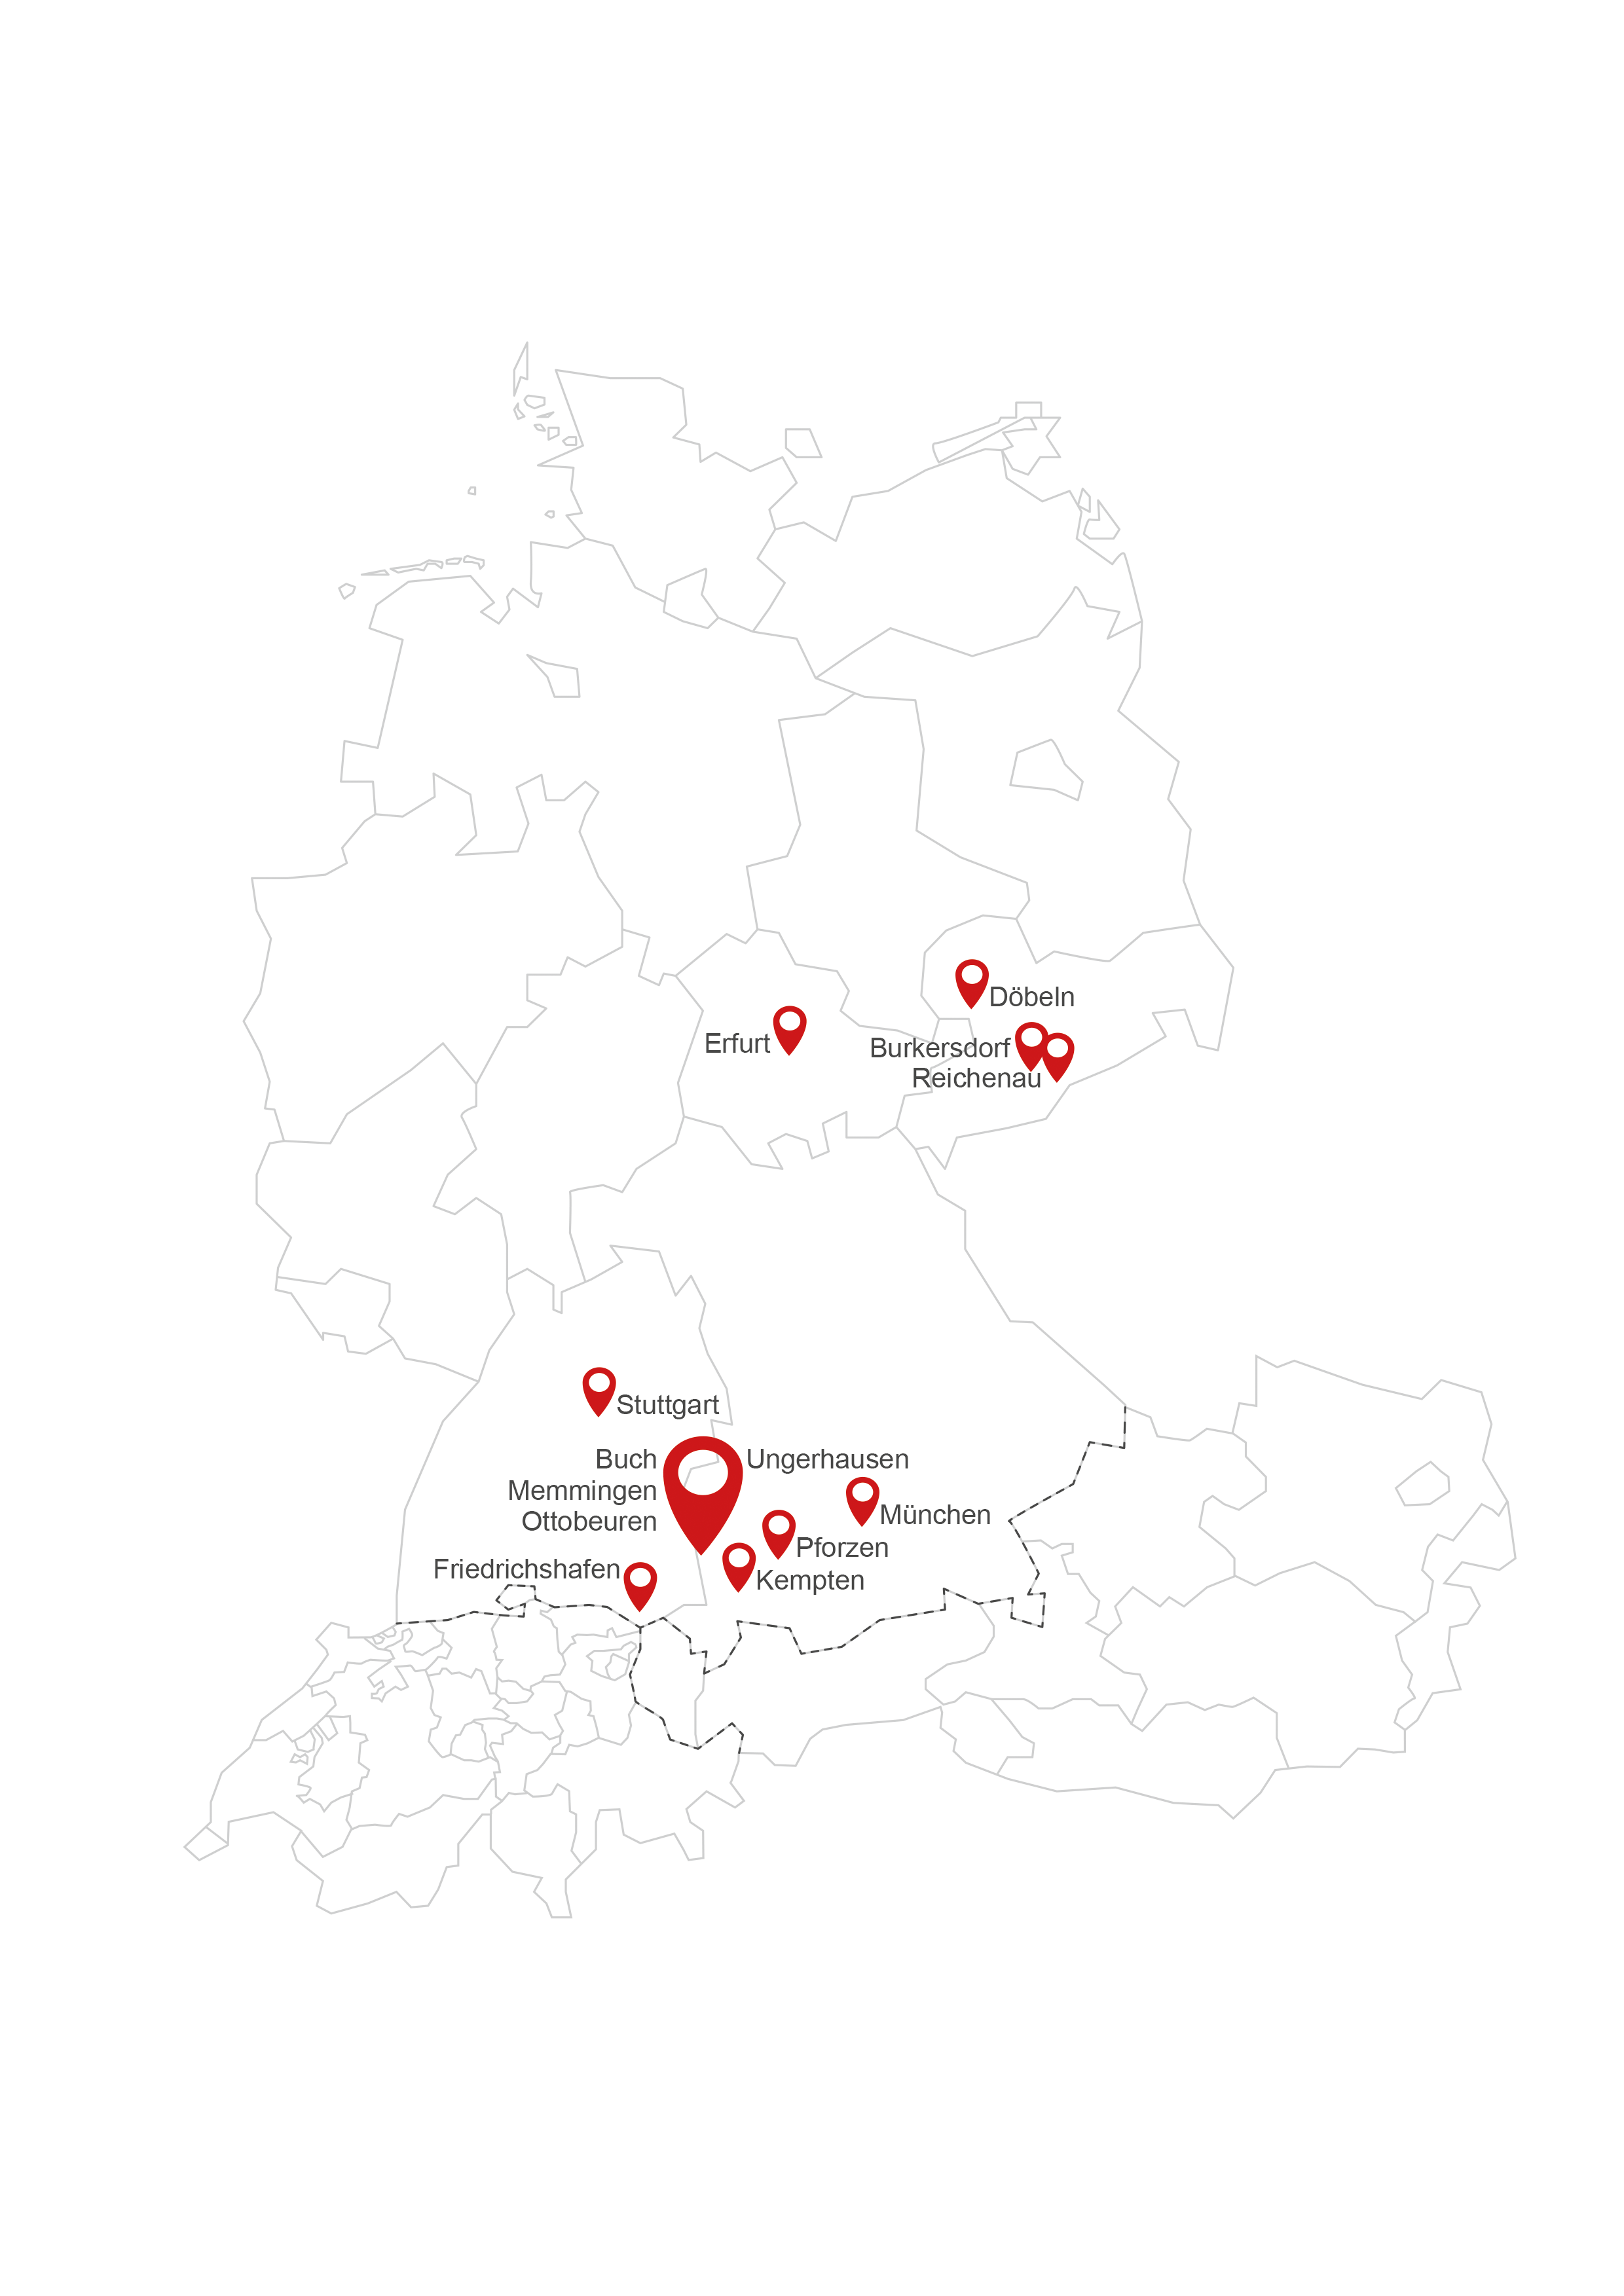 Deutschlandkarte der Standorte der Alois Müller Gruppe